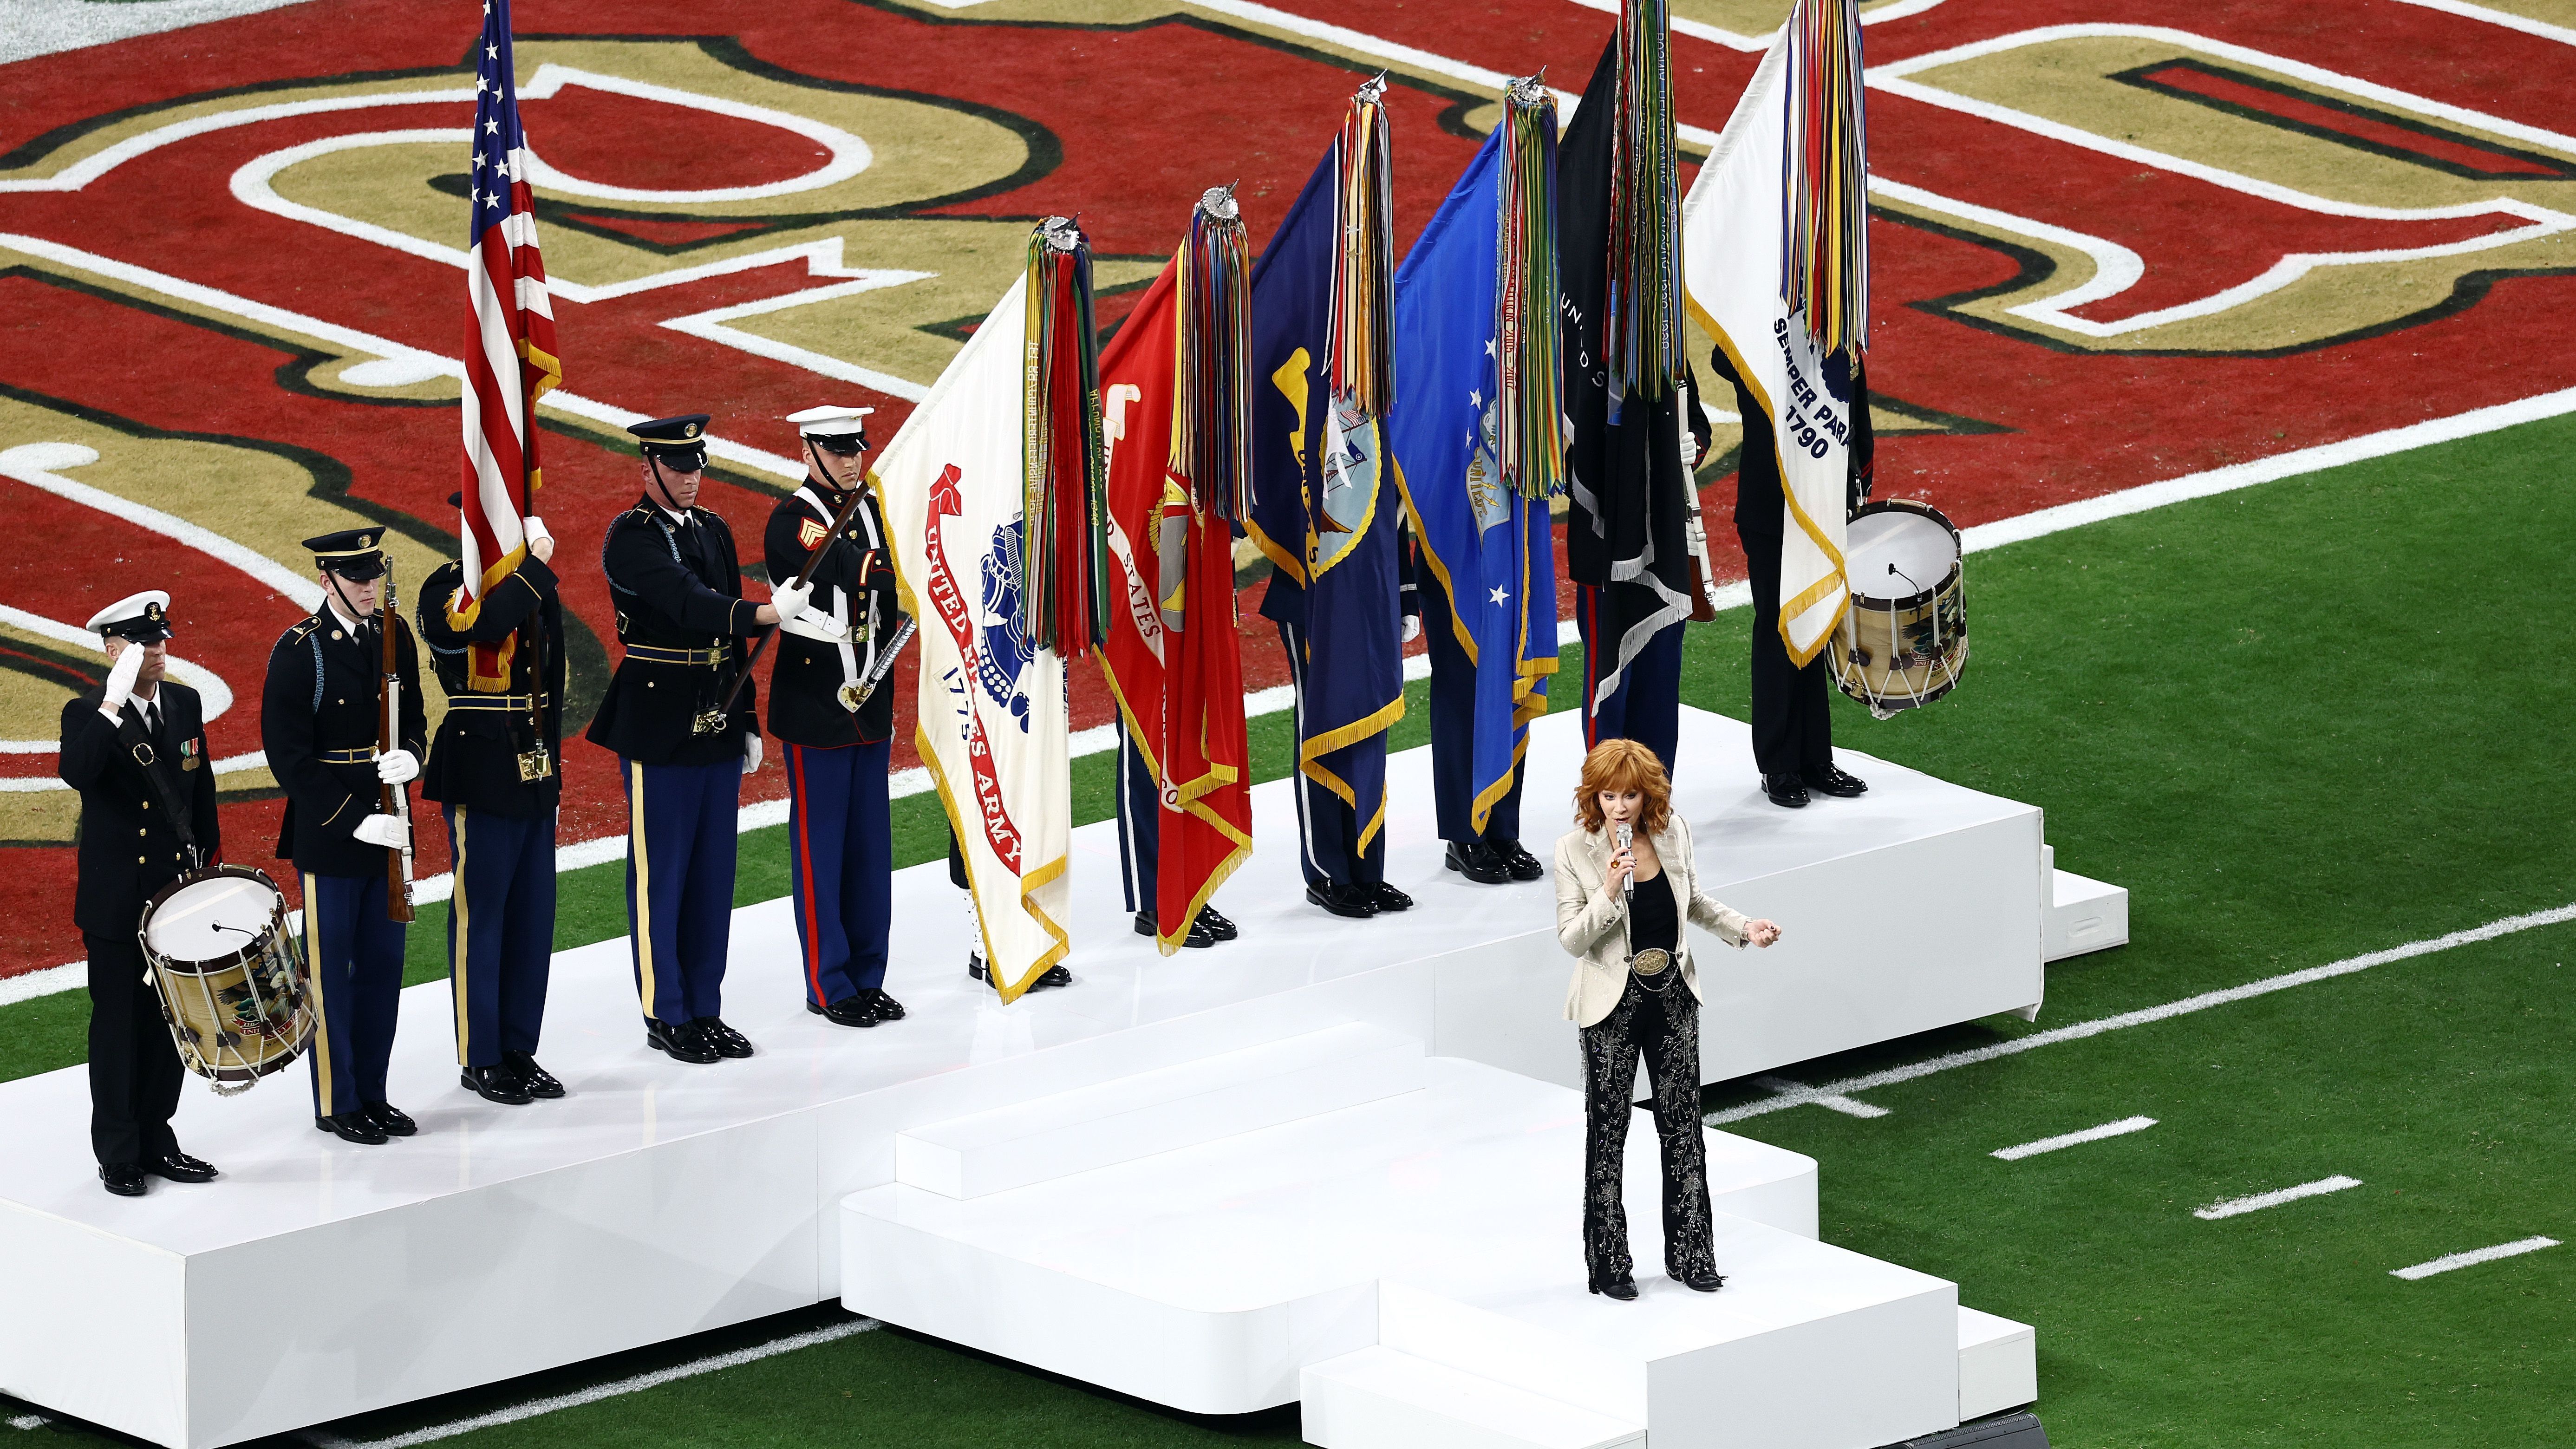 <strong>Reba McEntire singt die Nationalhymne</strong><br>Die Country-Sängerin wird von Soldaten der verschiedenen Waffengattungen begleitet.